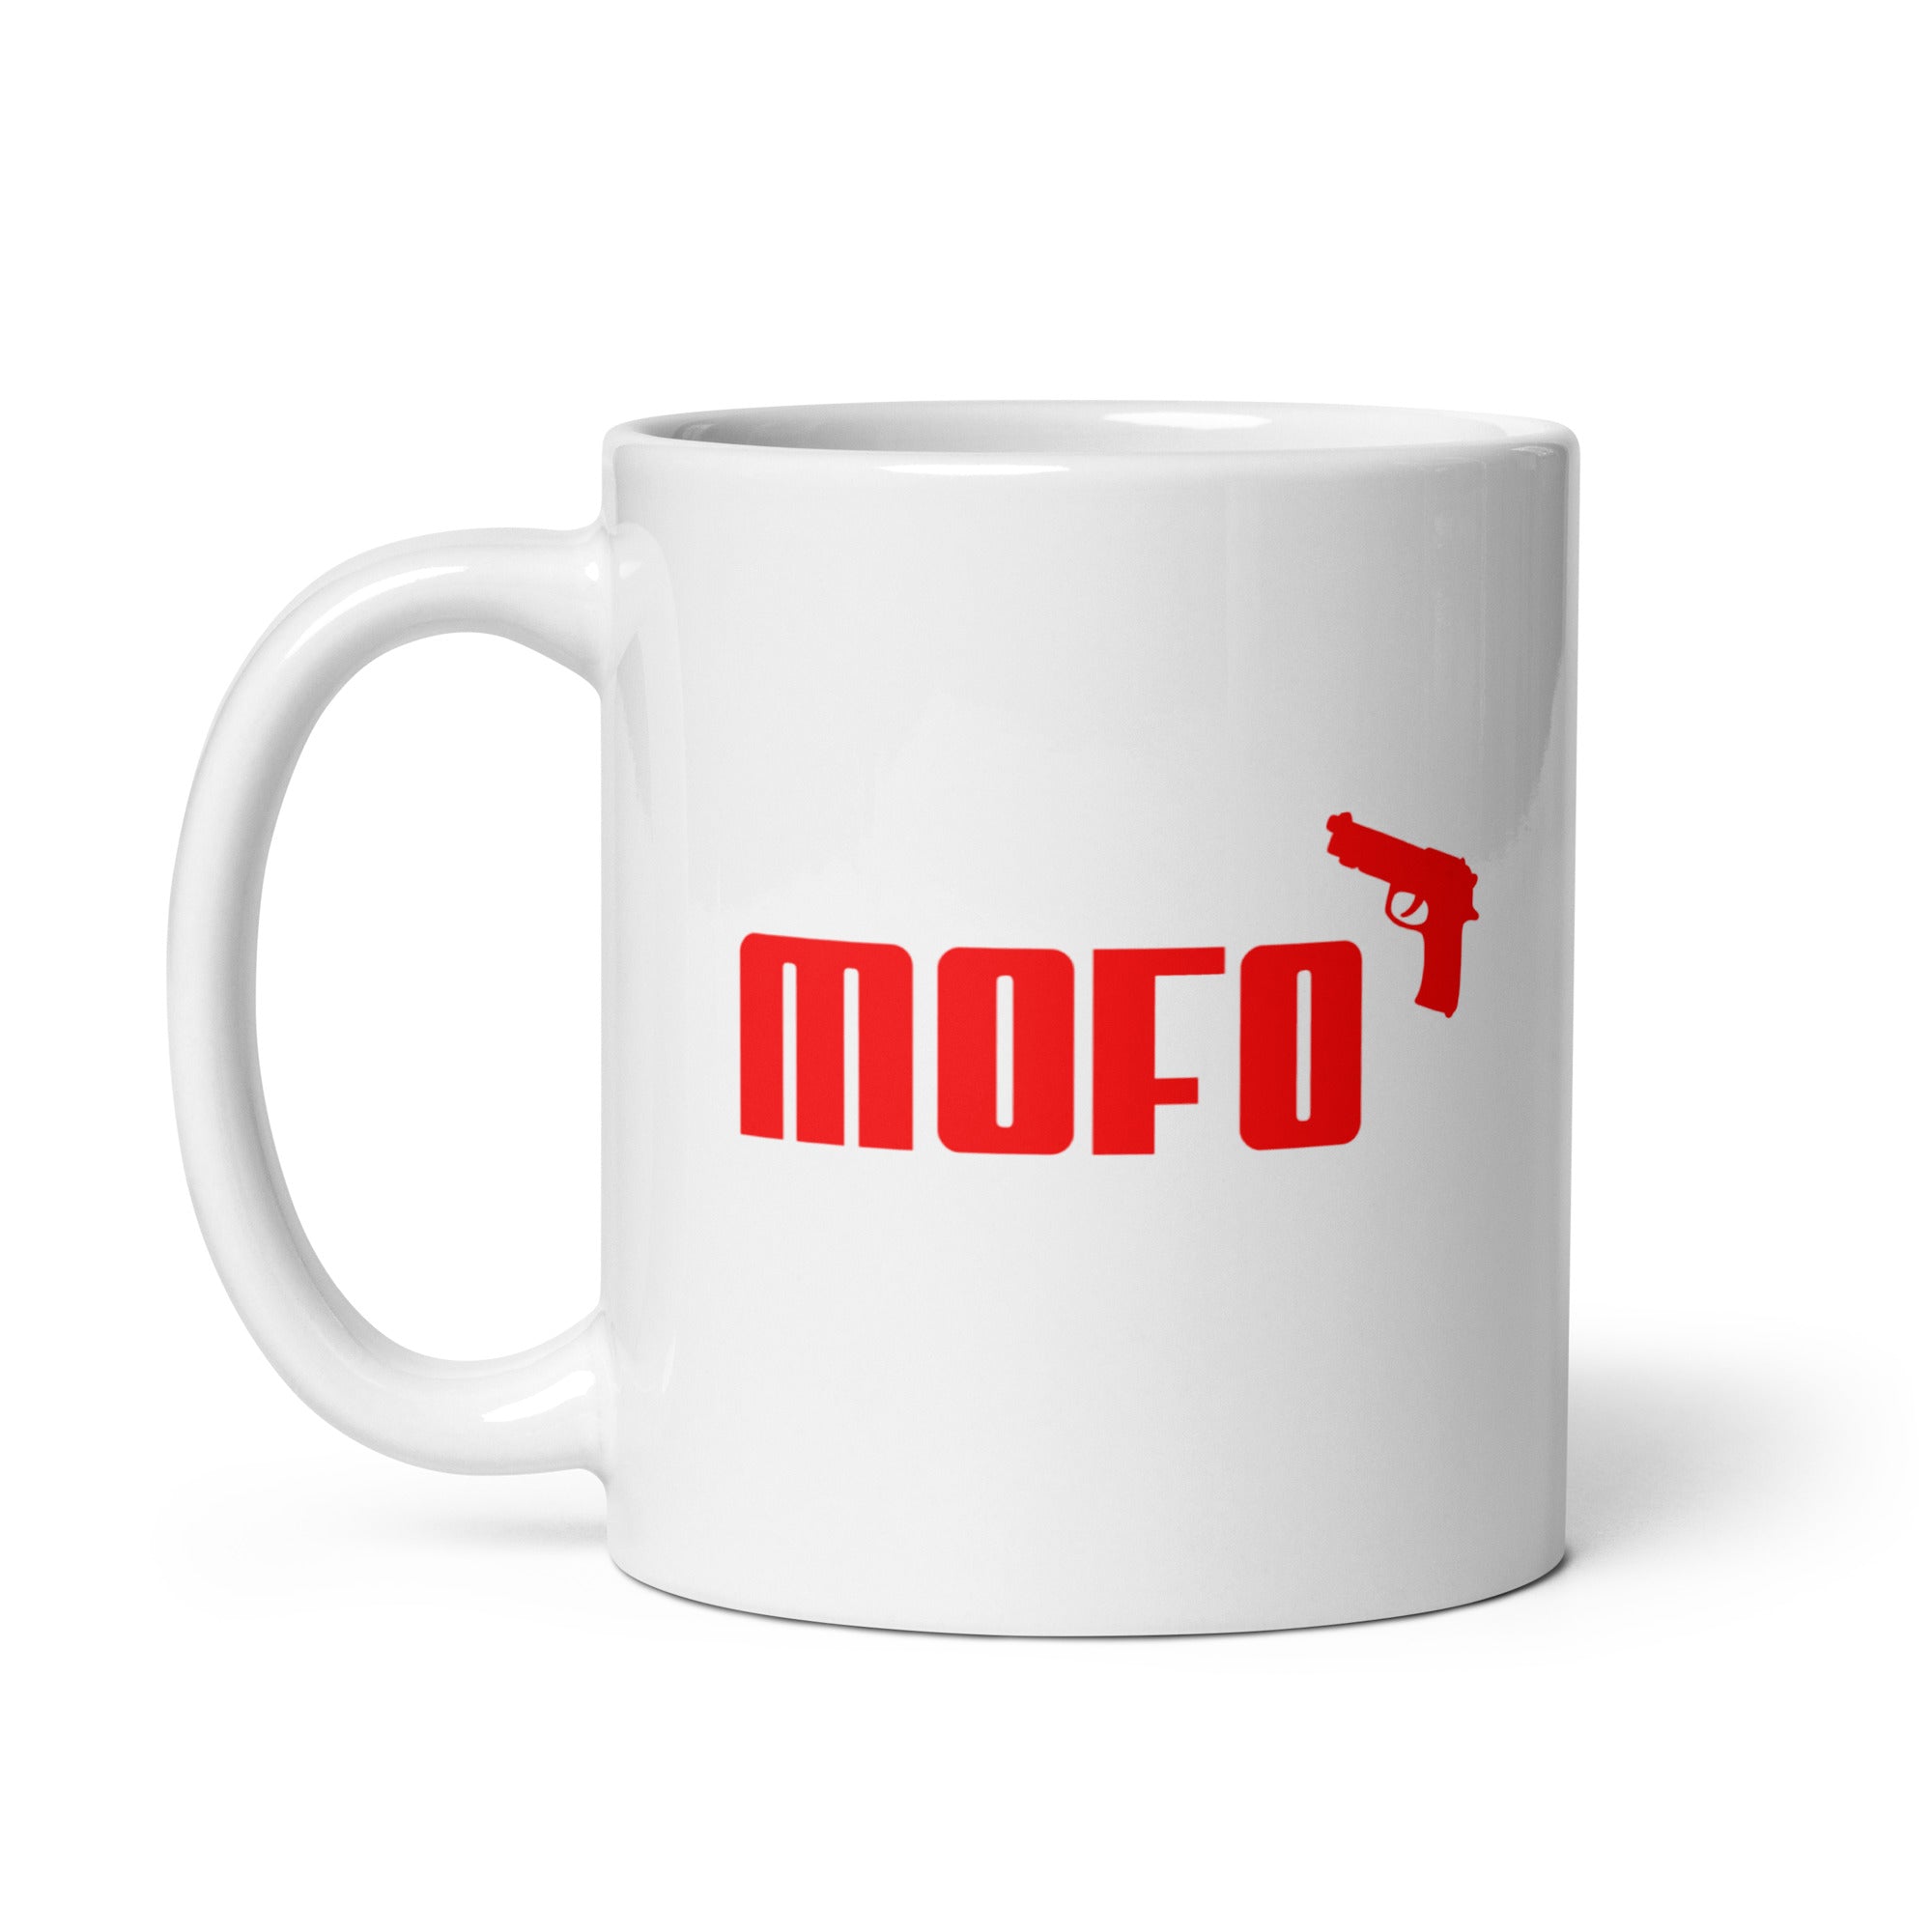 Mofo Mug